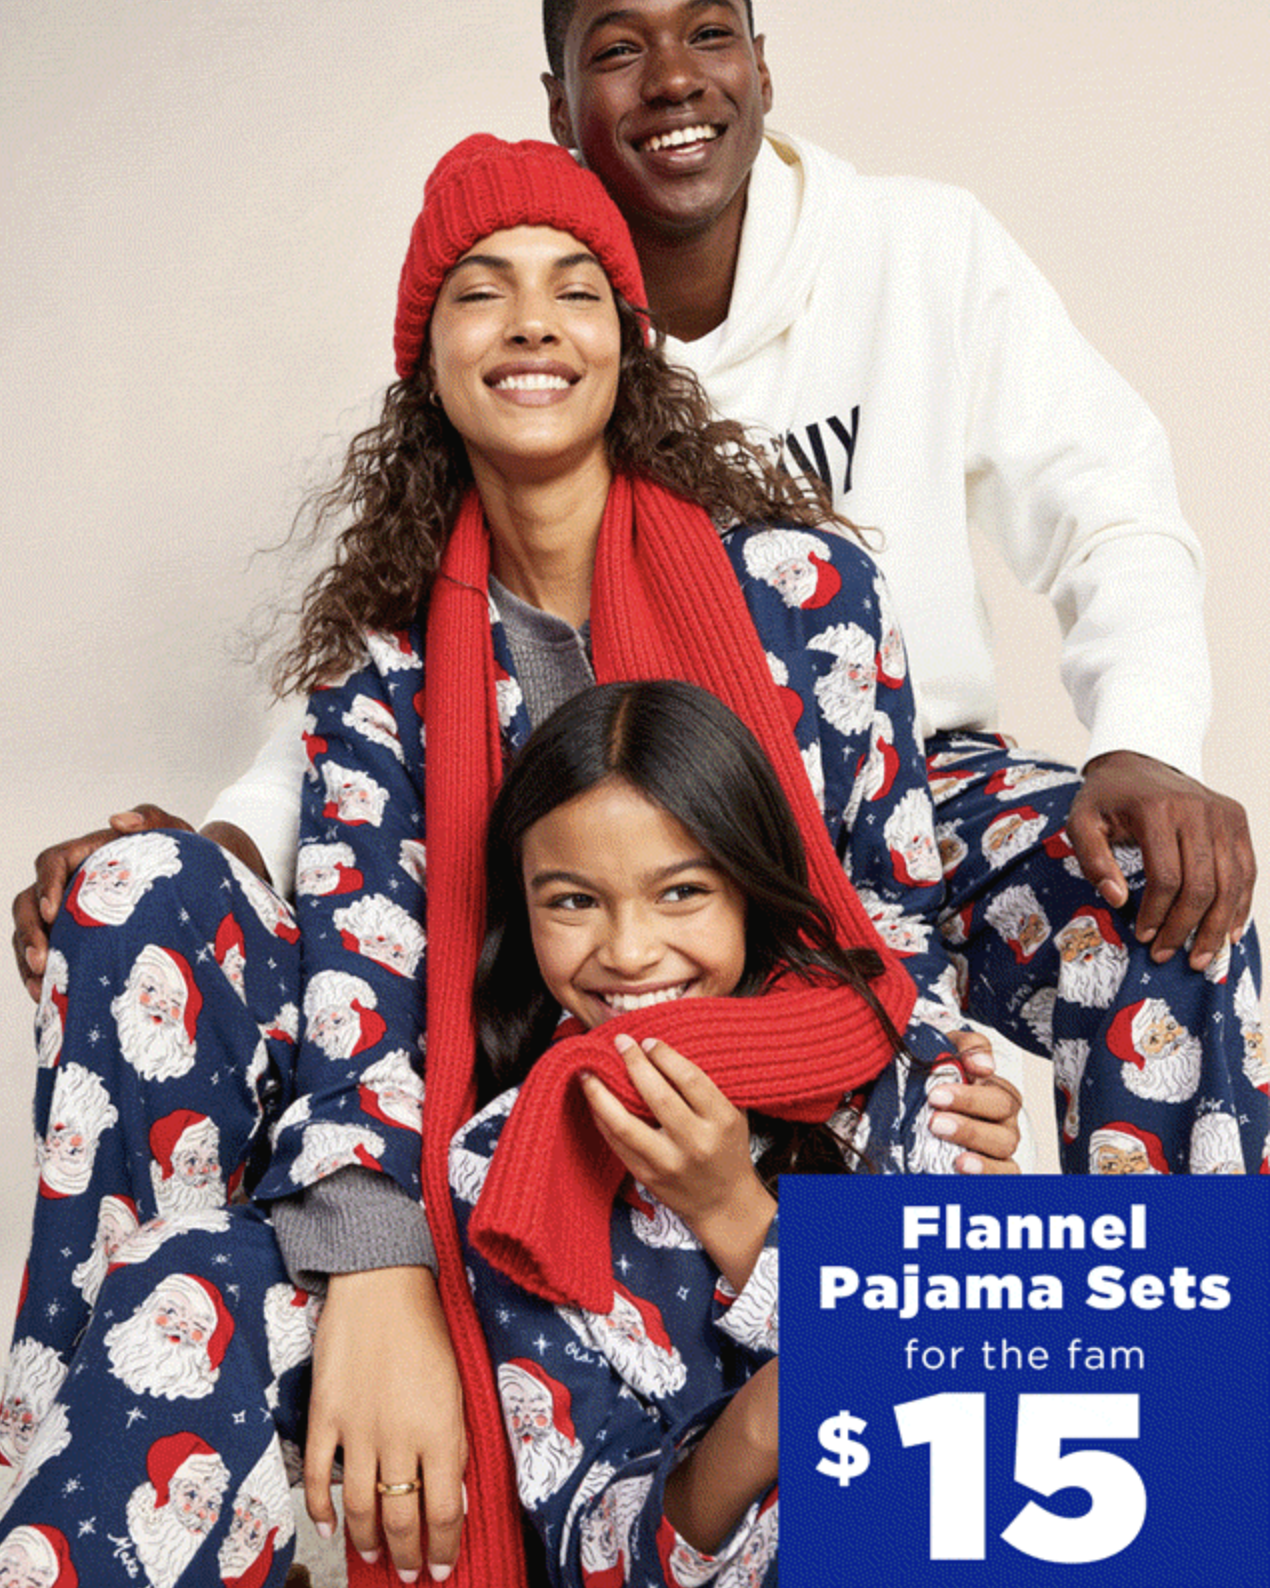 MUK LUKS Butter Knit Family Pajama Set 